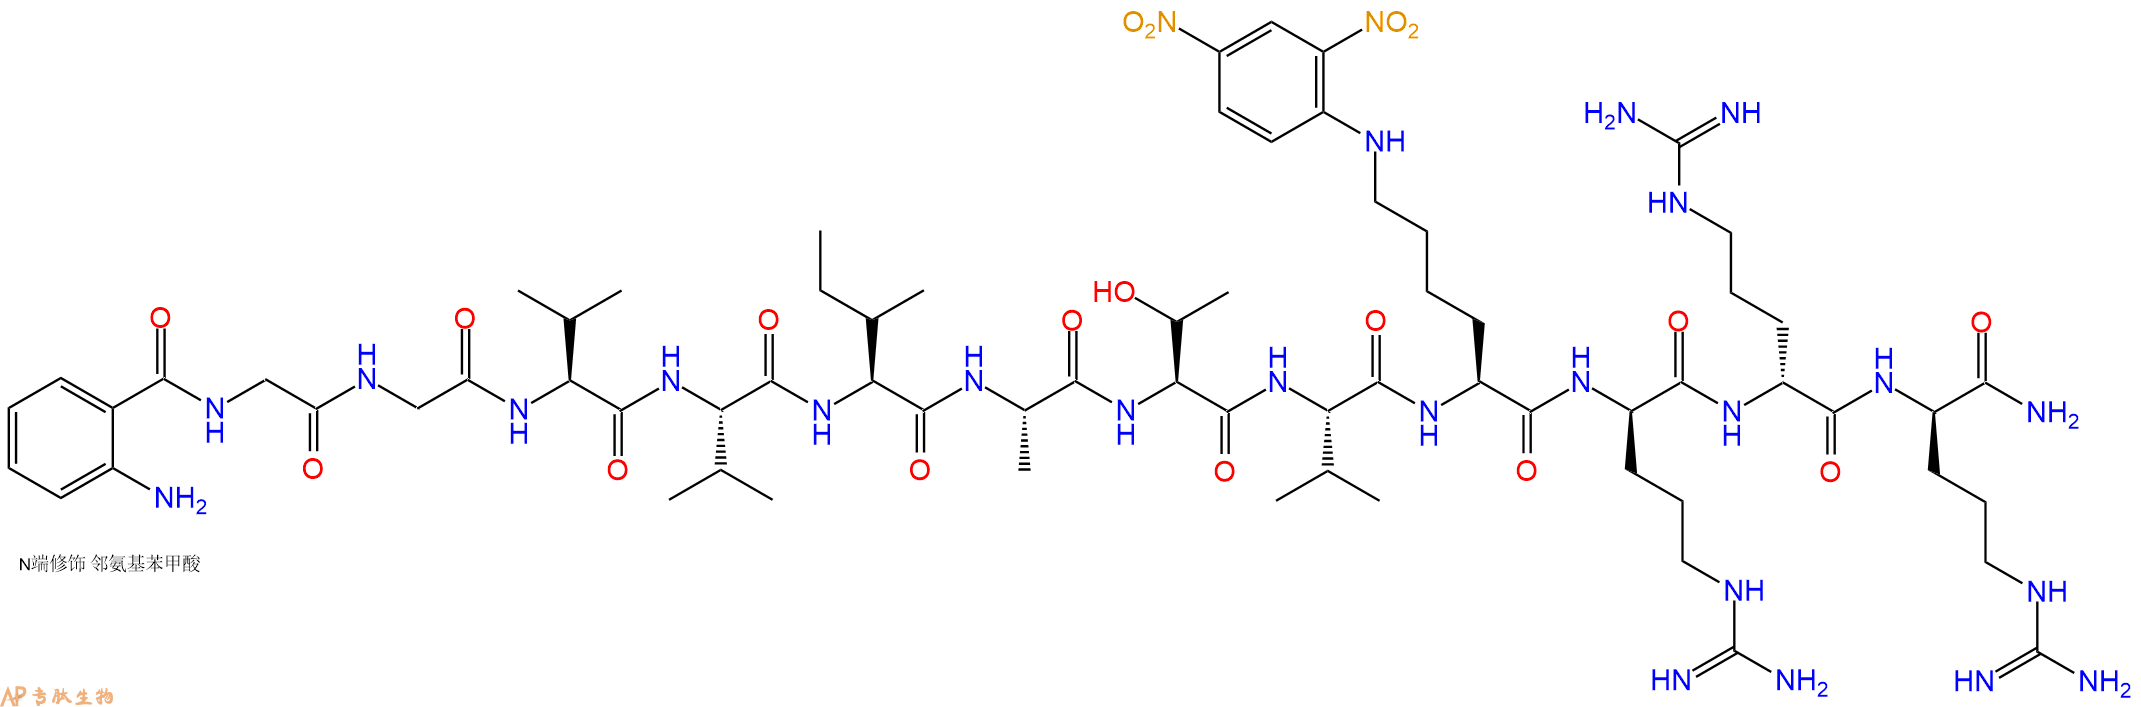 专肽生物产品淀粉肽N-Me-Abz-Amyloid β/A4 Protein Precursor7701182723-43-8